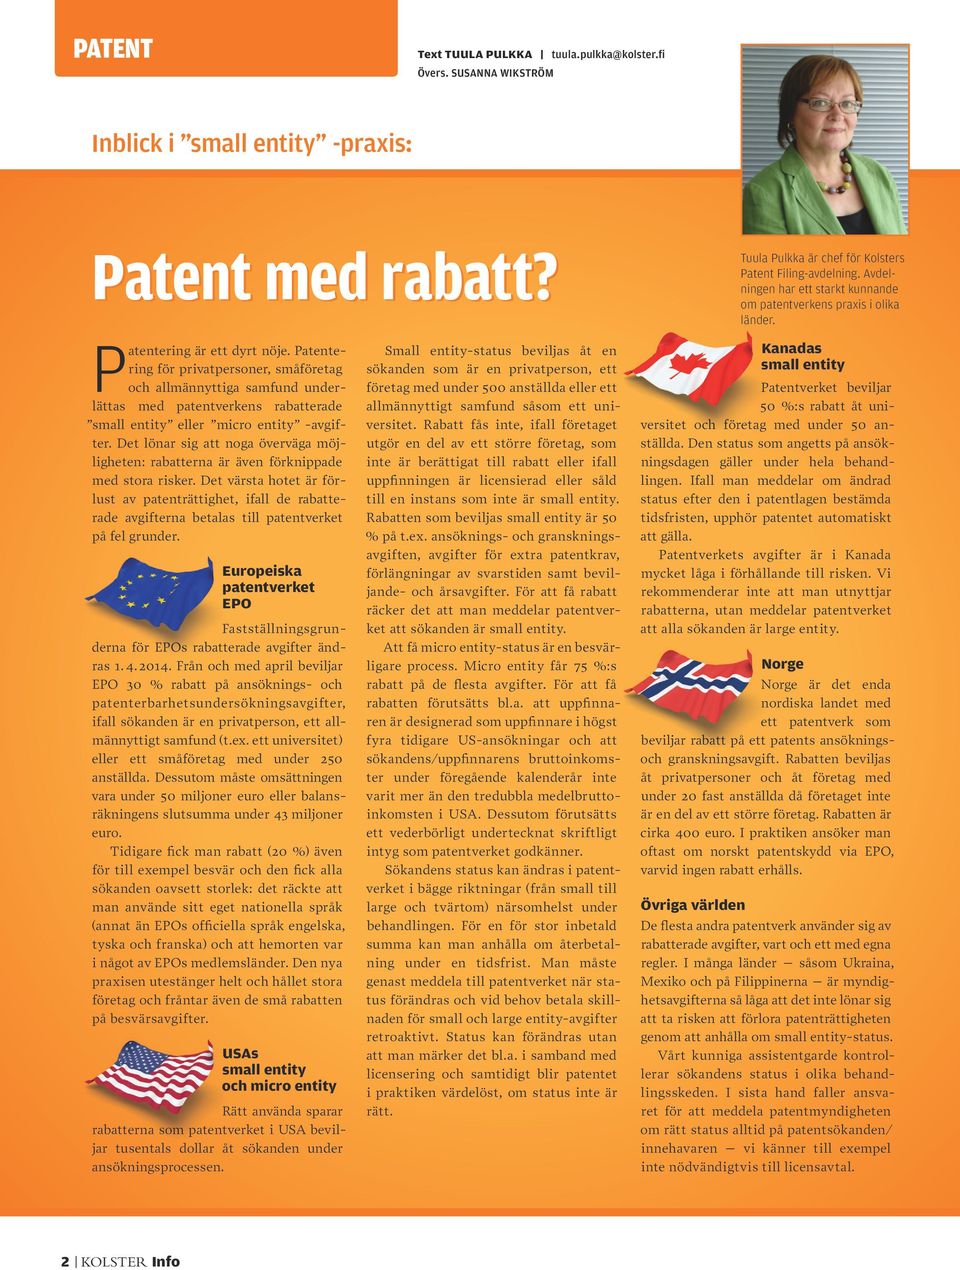 Patentering för privatpersoner, småföretag och allmännyttiga samfund underlättas med patentverkens rabatterade small entity eller micro entity -avgifter.